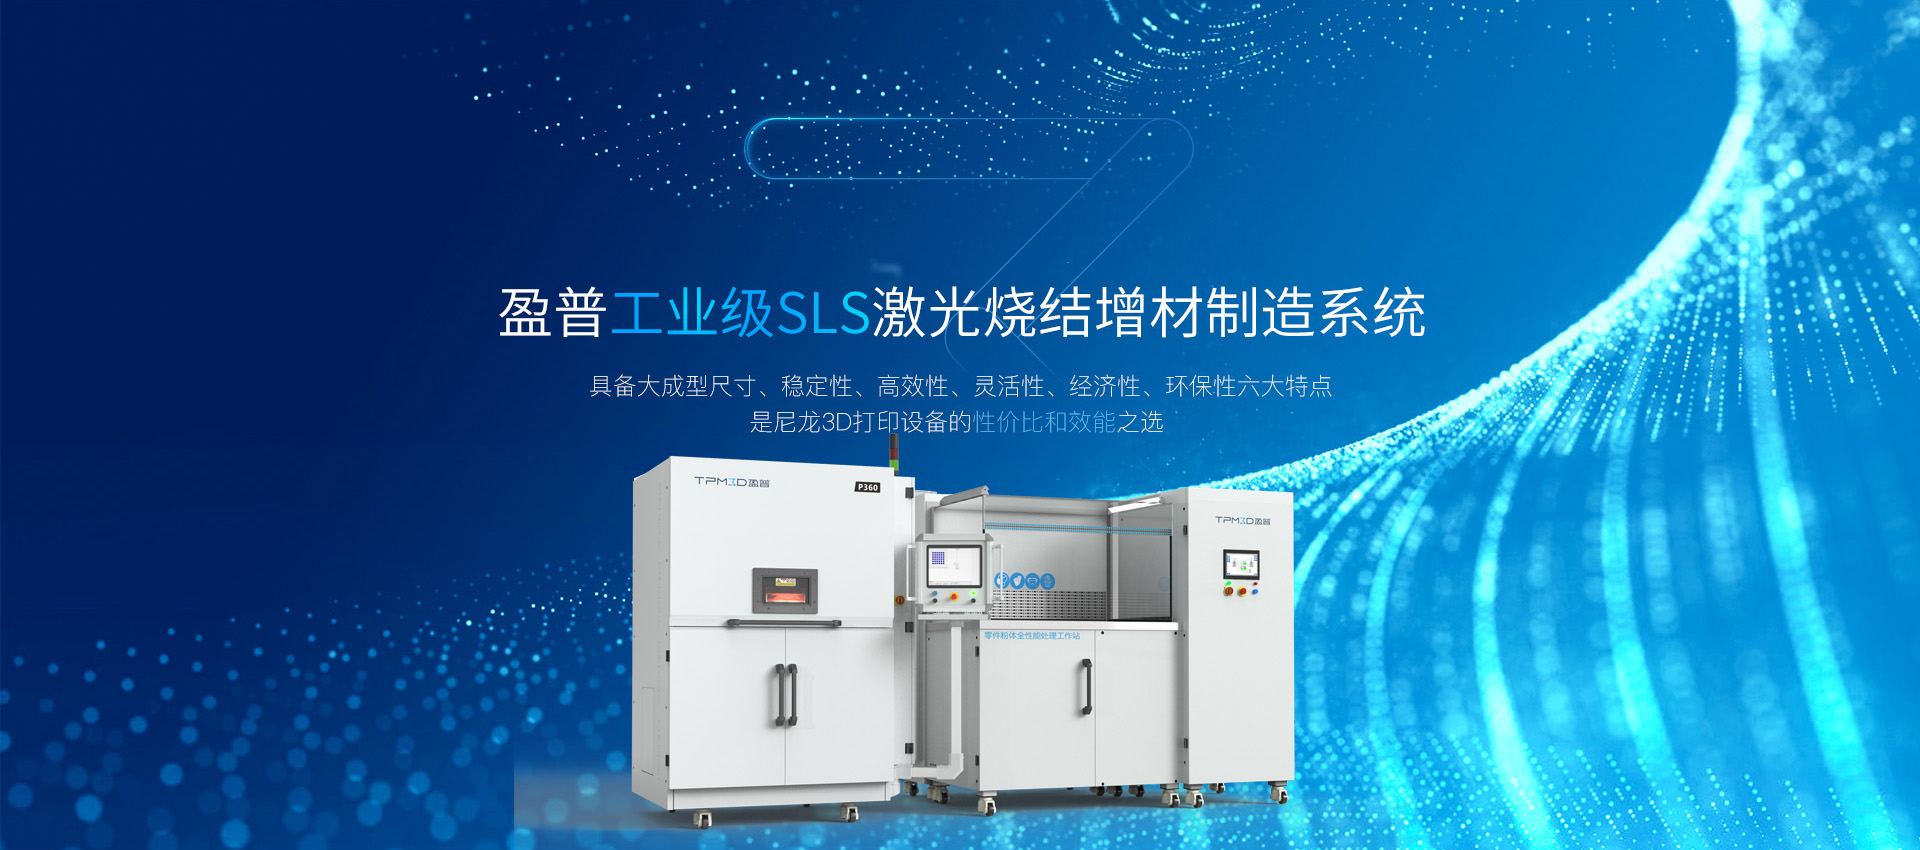 盈普工業級SLS激光燒結增材制造系統